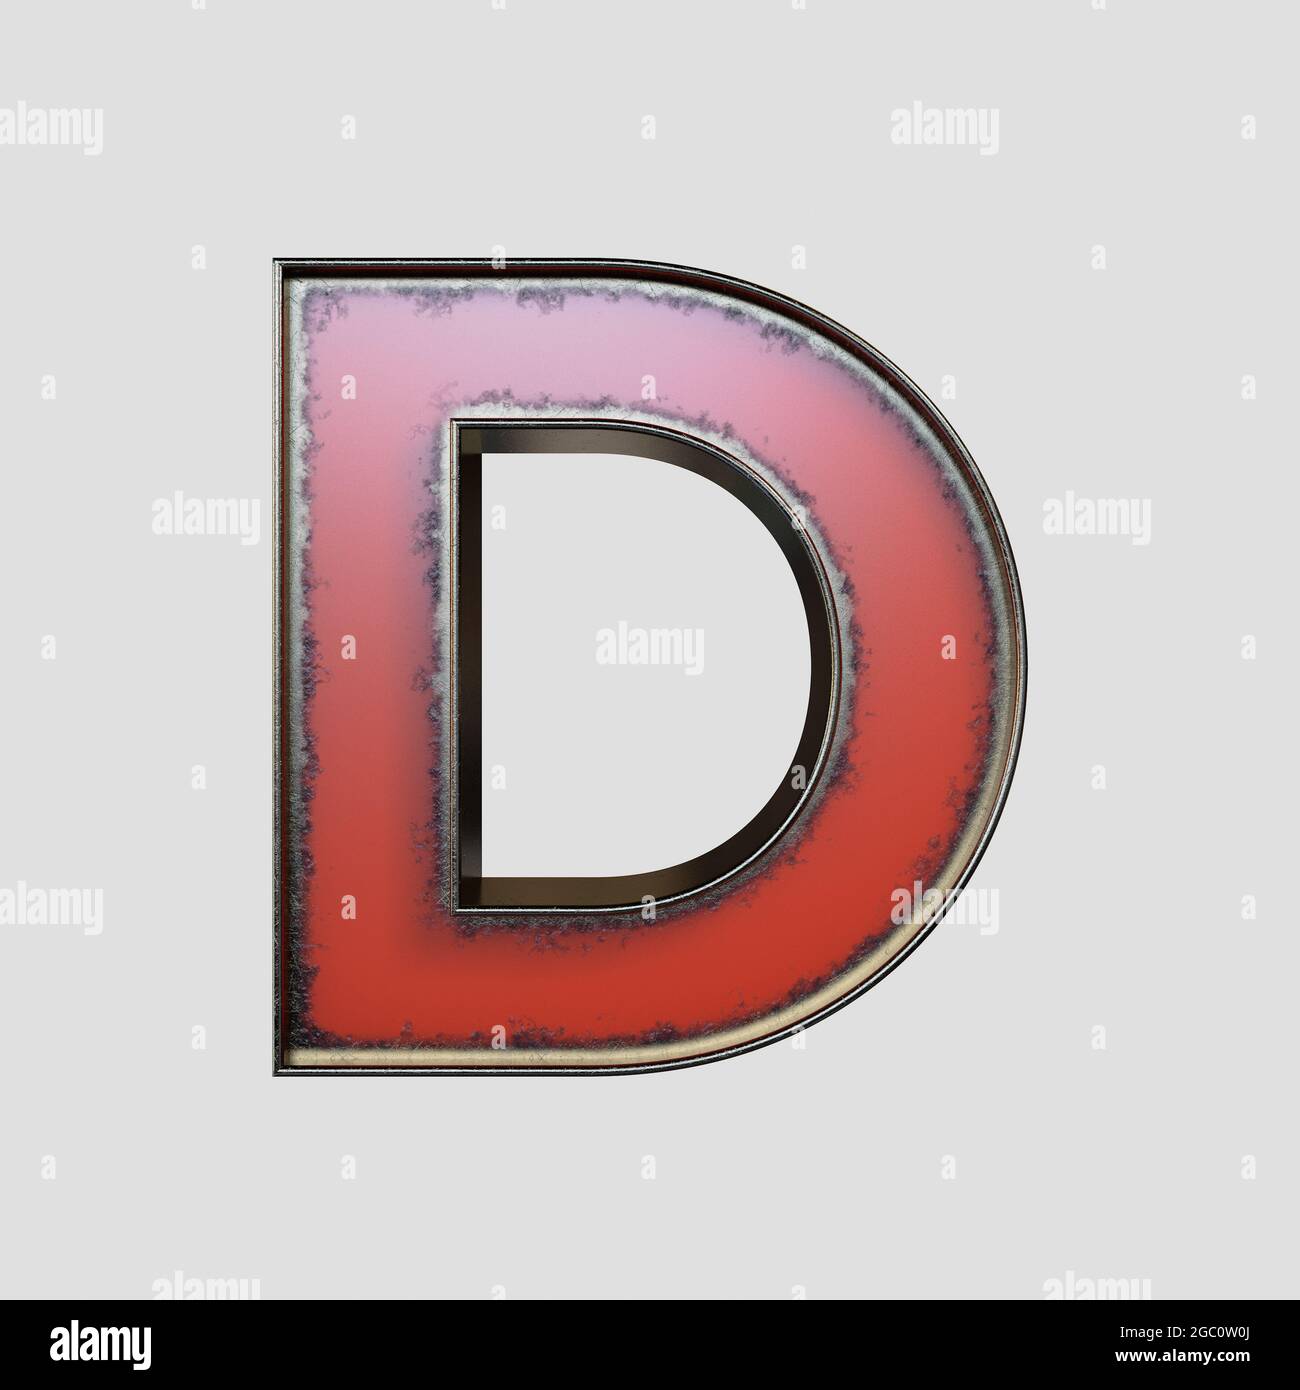 Un concept vintage marquetaire de la lettre D en métal usé sur un fond isolé - rendu 3D Banque D'Images